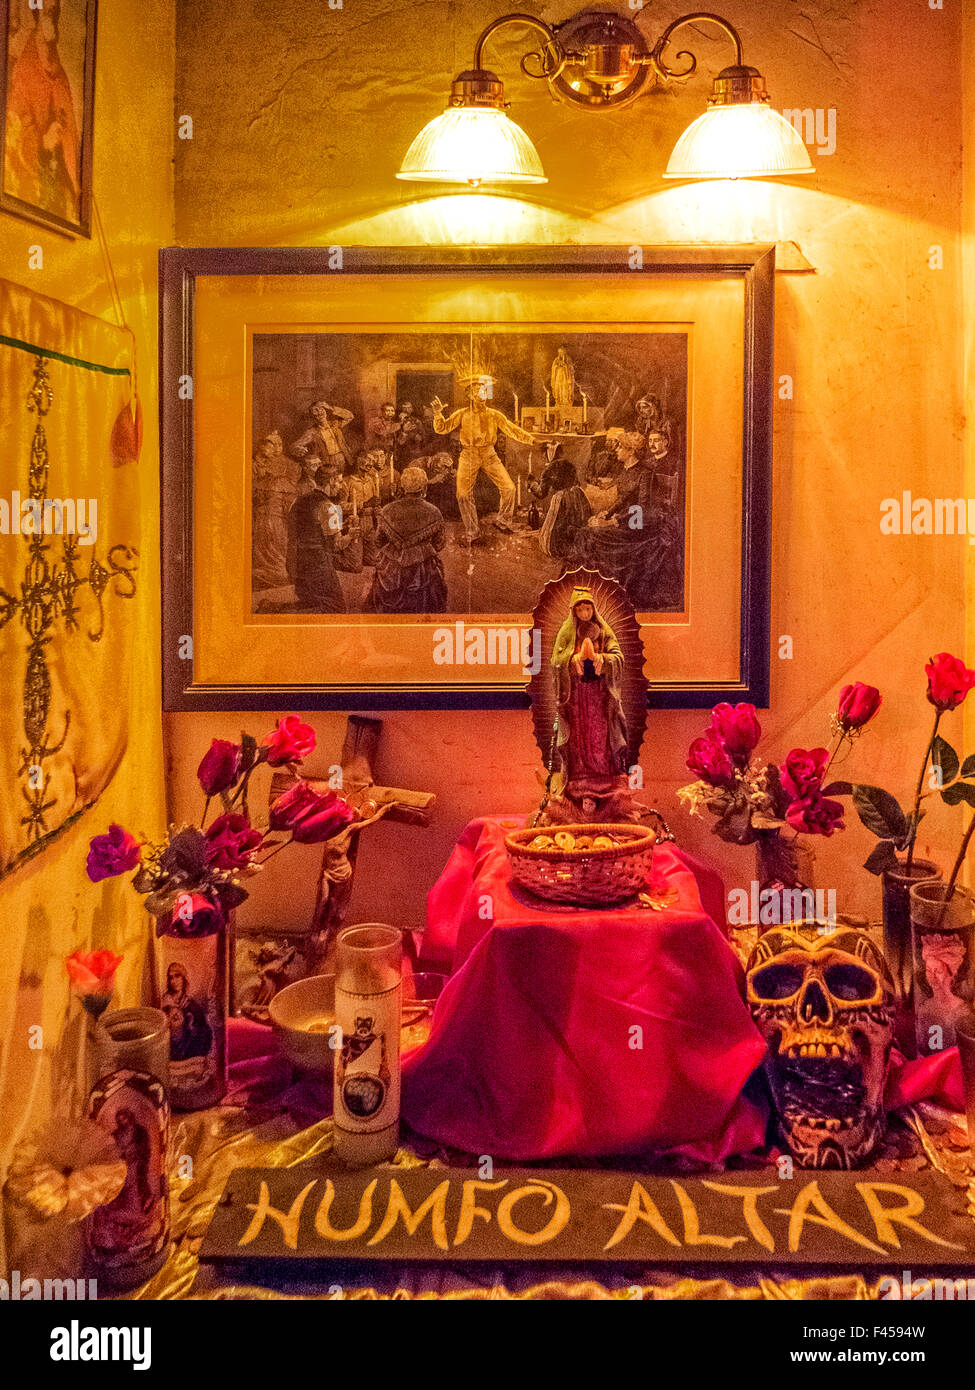 En el Museo de vudú en Nueva Orleans, un altar Humfo mezcla el cristianismo y el vudú con los santos católicos que representan los espíritus vudú. Nota aguafuerte de ceremonia vudú, la estatua de María, rosas artificiales, y el modelo de cráneo. Foto de stock